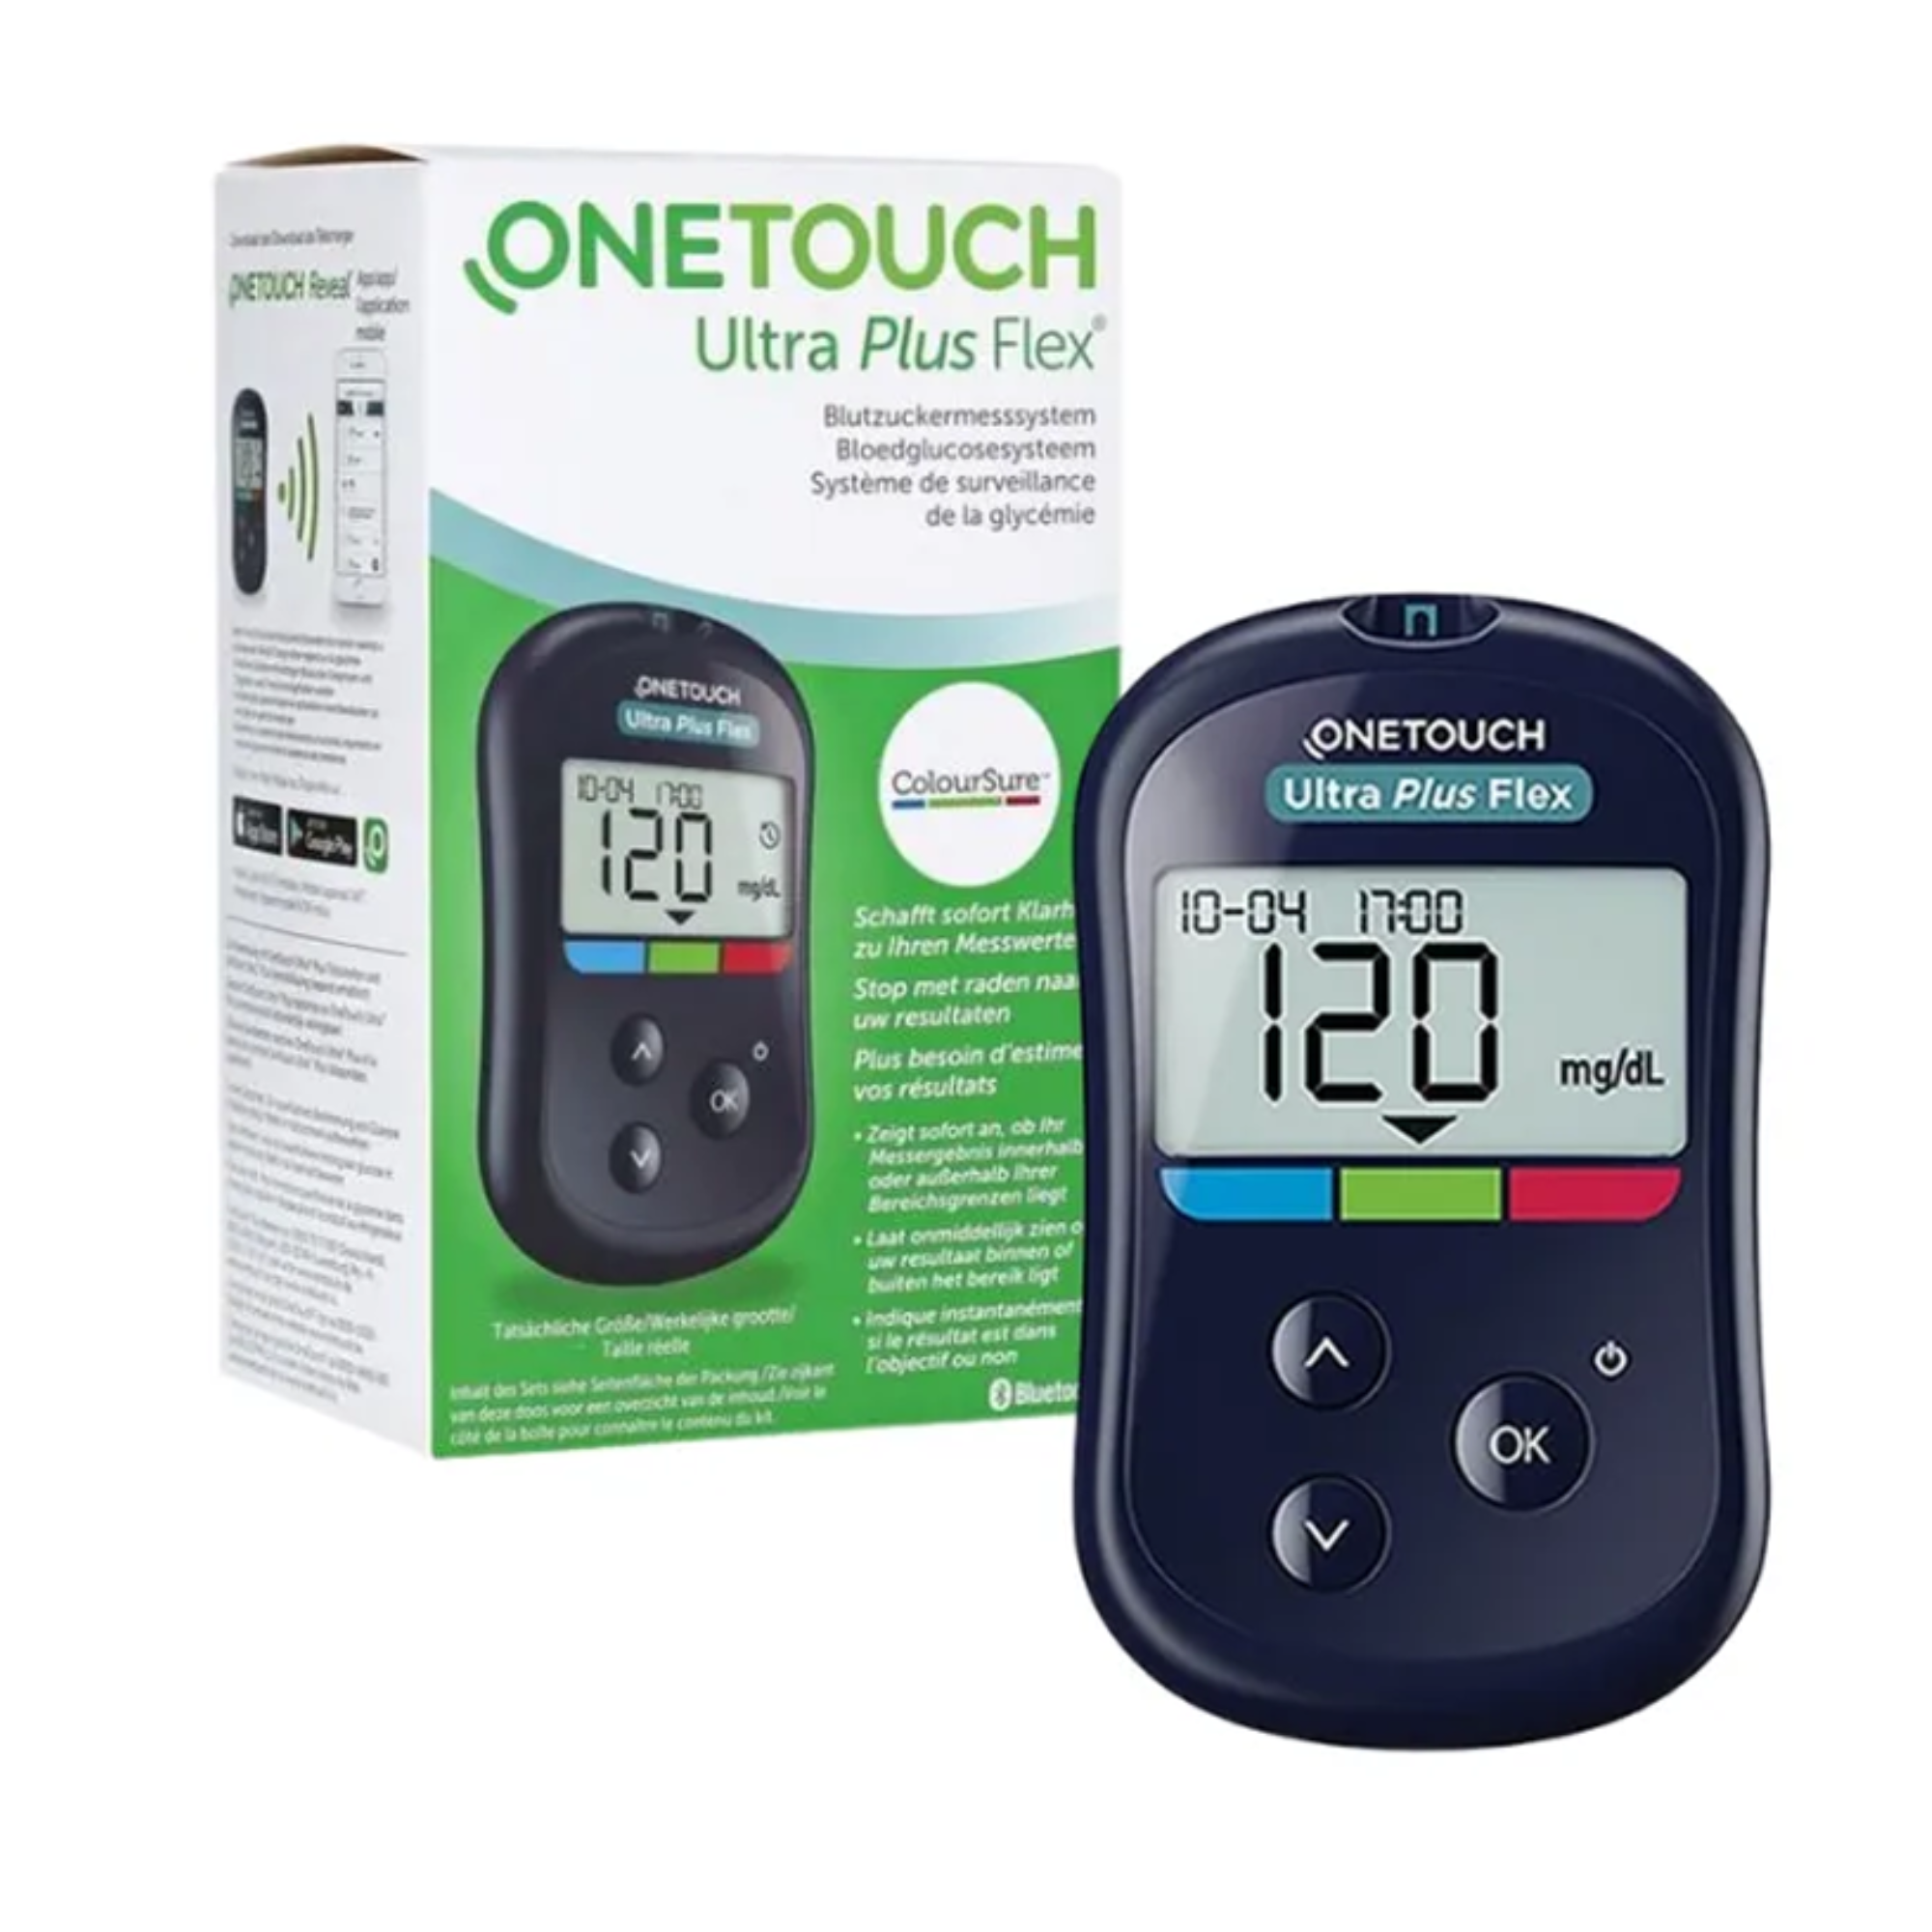 Máy đo đường huyết OneTouch Ultra Plus Flex dễ dàng sử dụng phù hợp với mọi độ tuổi